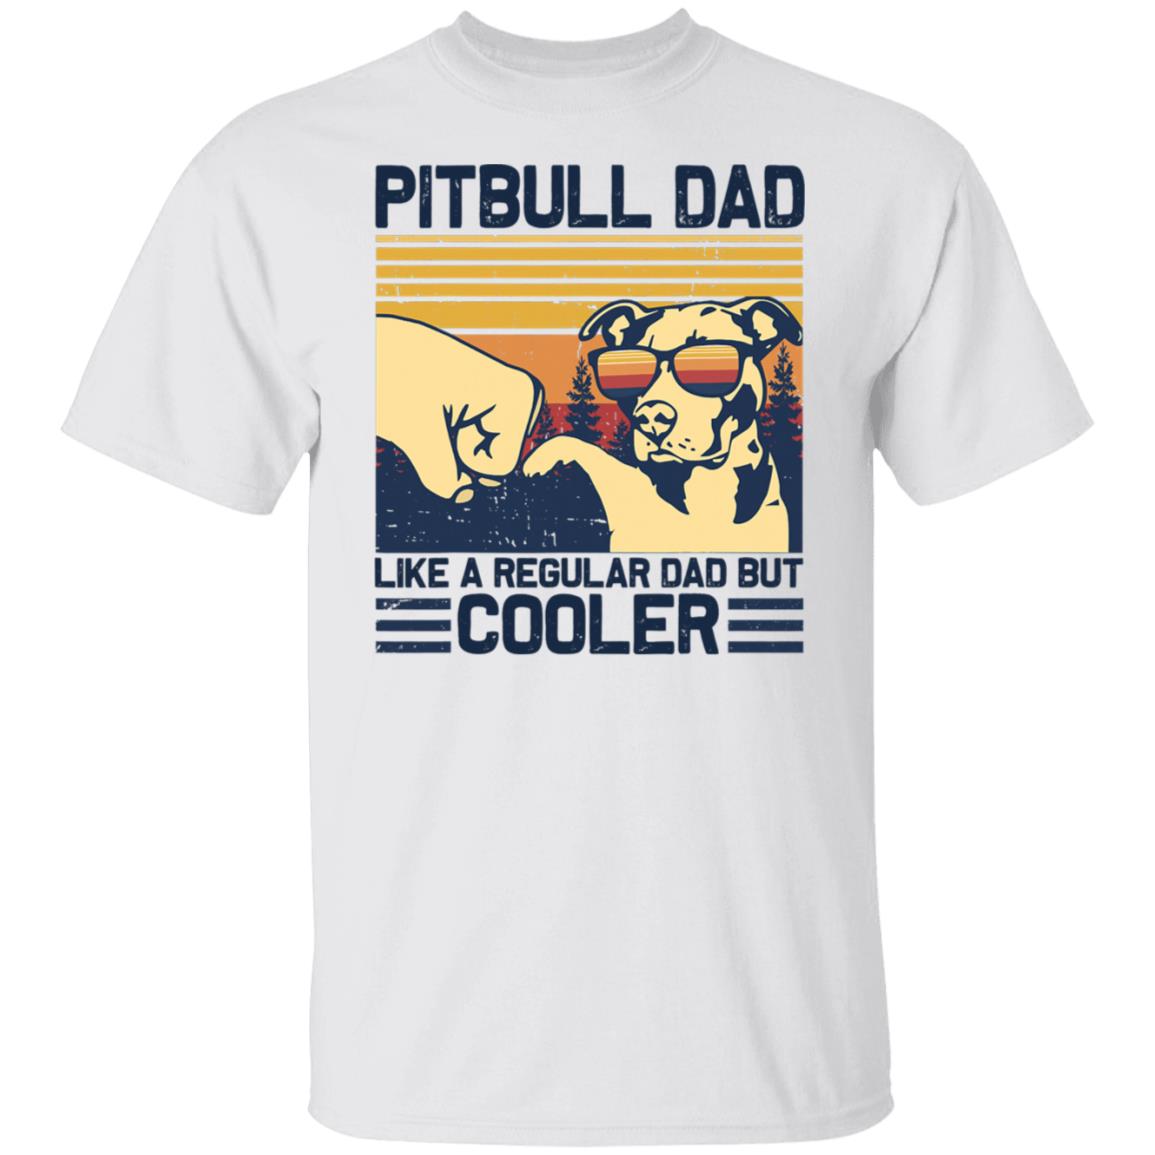 Pitbull Dad-Like a regular dad but COOLER Shirt